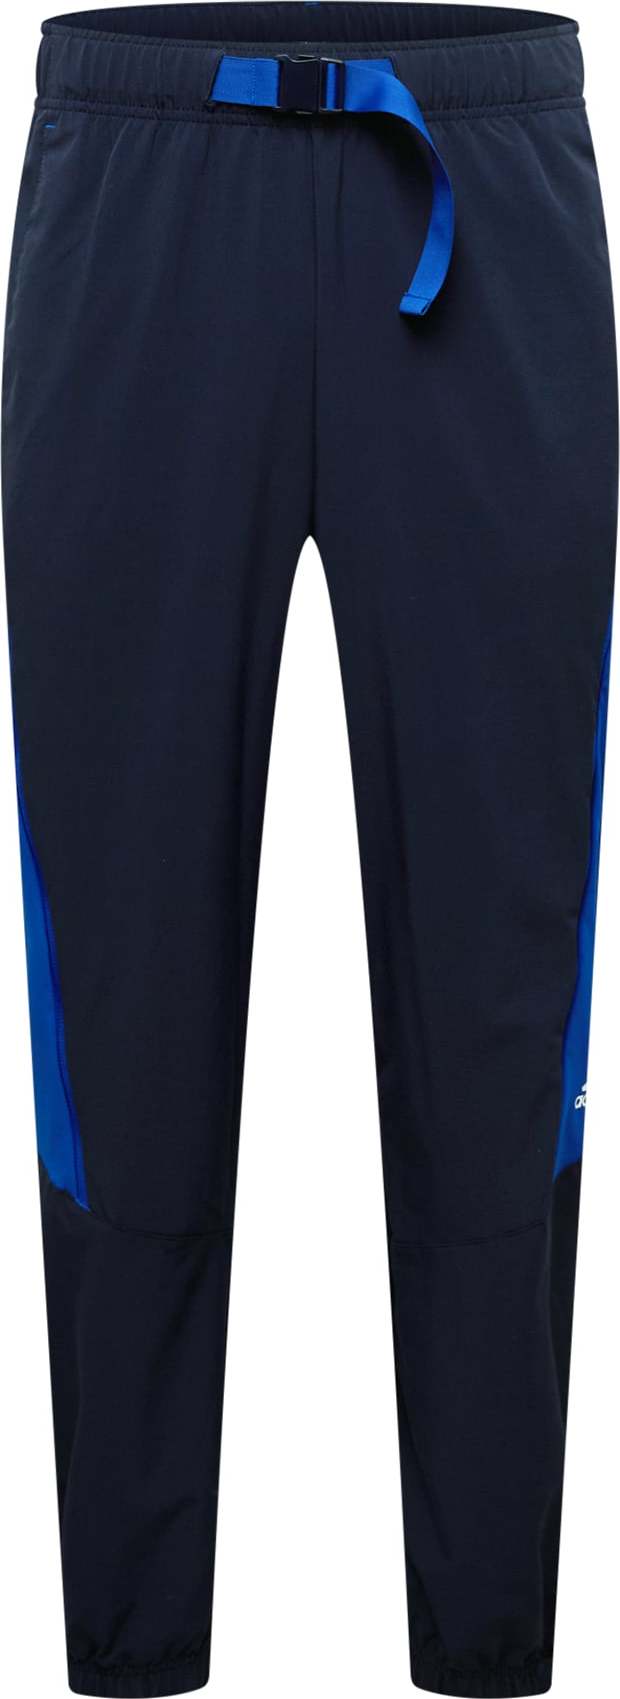 ADIDAS PERFORMANCE Sportovní kalhoty tmavě modrá / modrá / bílá